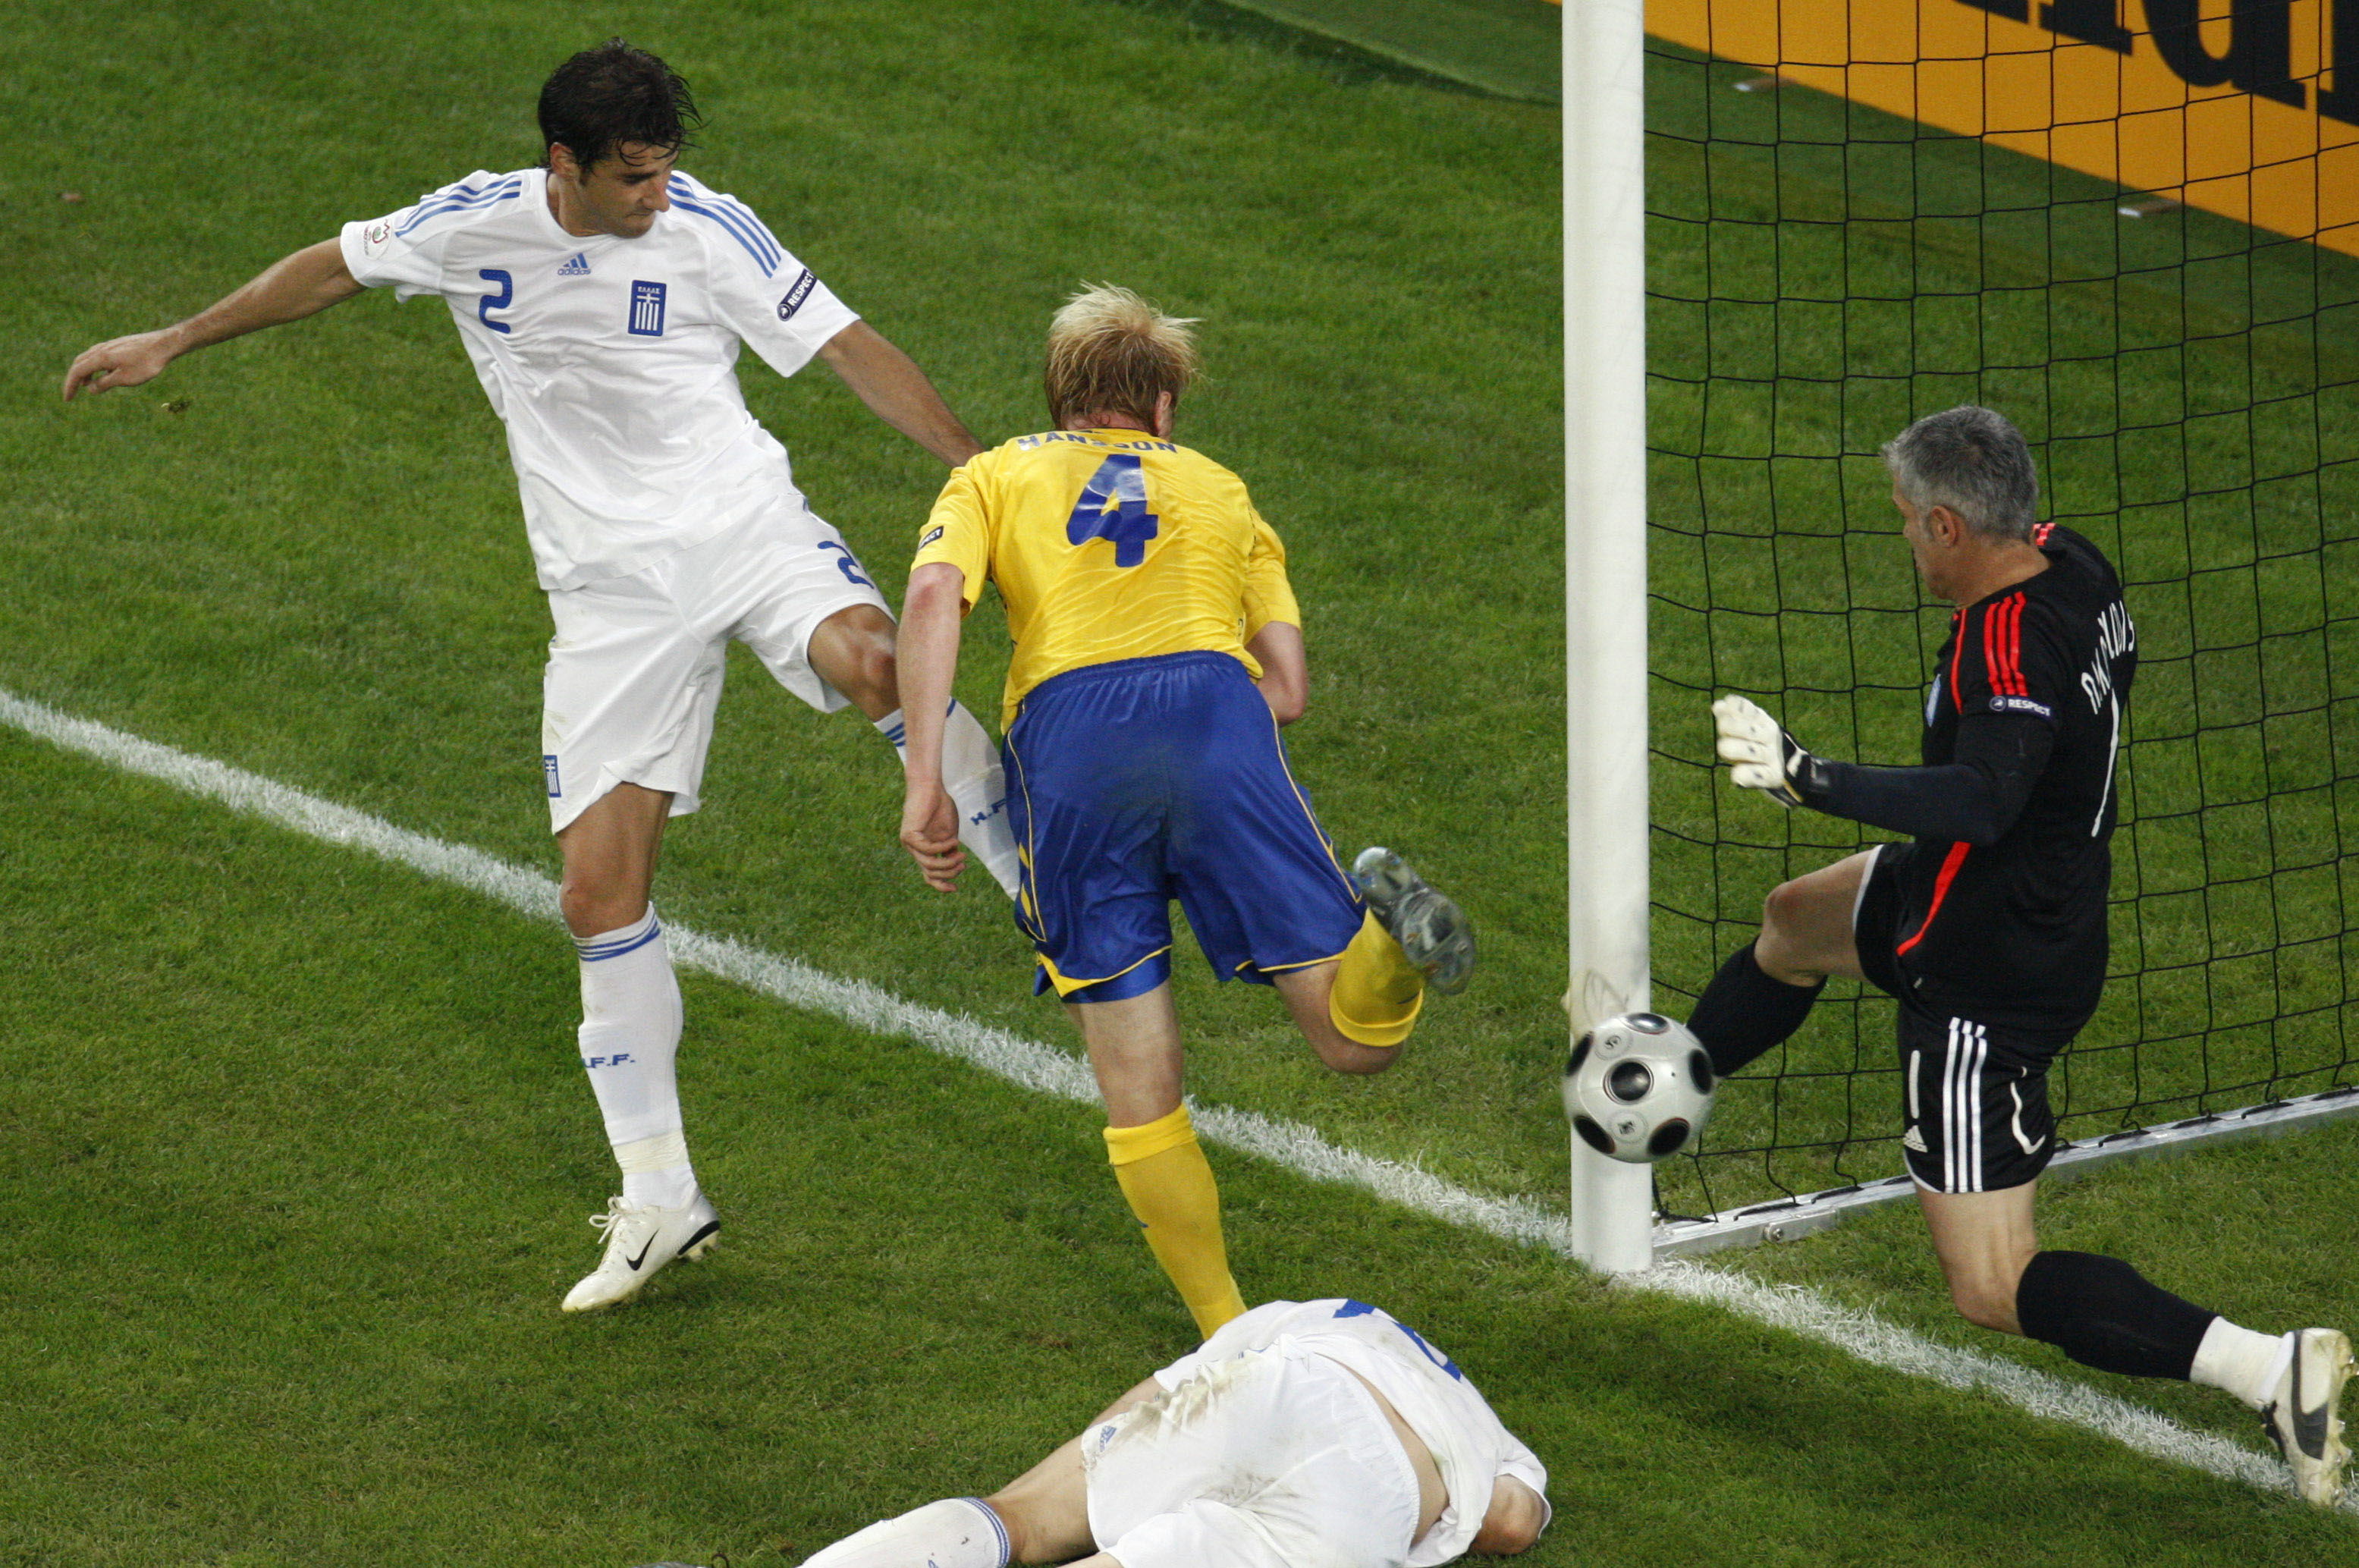 Det sista stora landslagsminnet är från EM 2008 när Hansson fumlade in en boll bakom Greklands målvakt Nikopolidis.